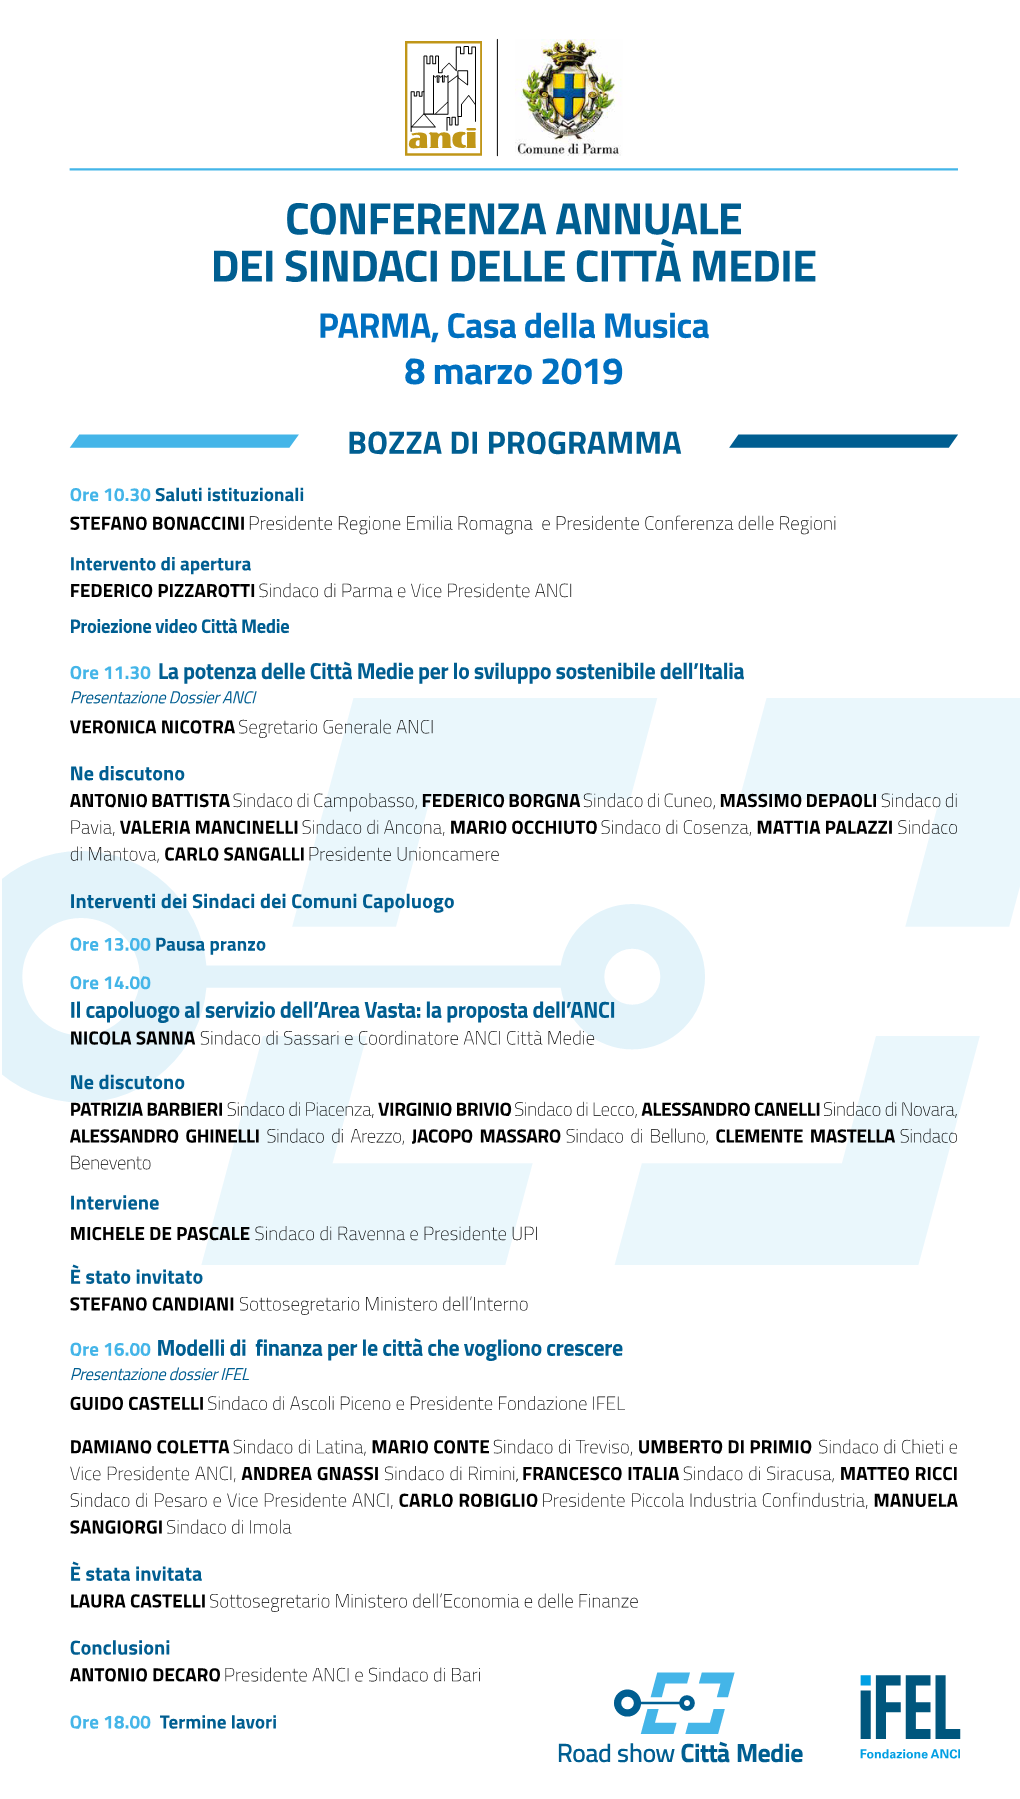 CONFERENZA ANNUALE DEI SINDACI DELLE CITTÀ MEDIE PARMA, Casa Della Musica 8 Marzo 2019